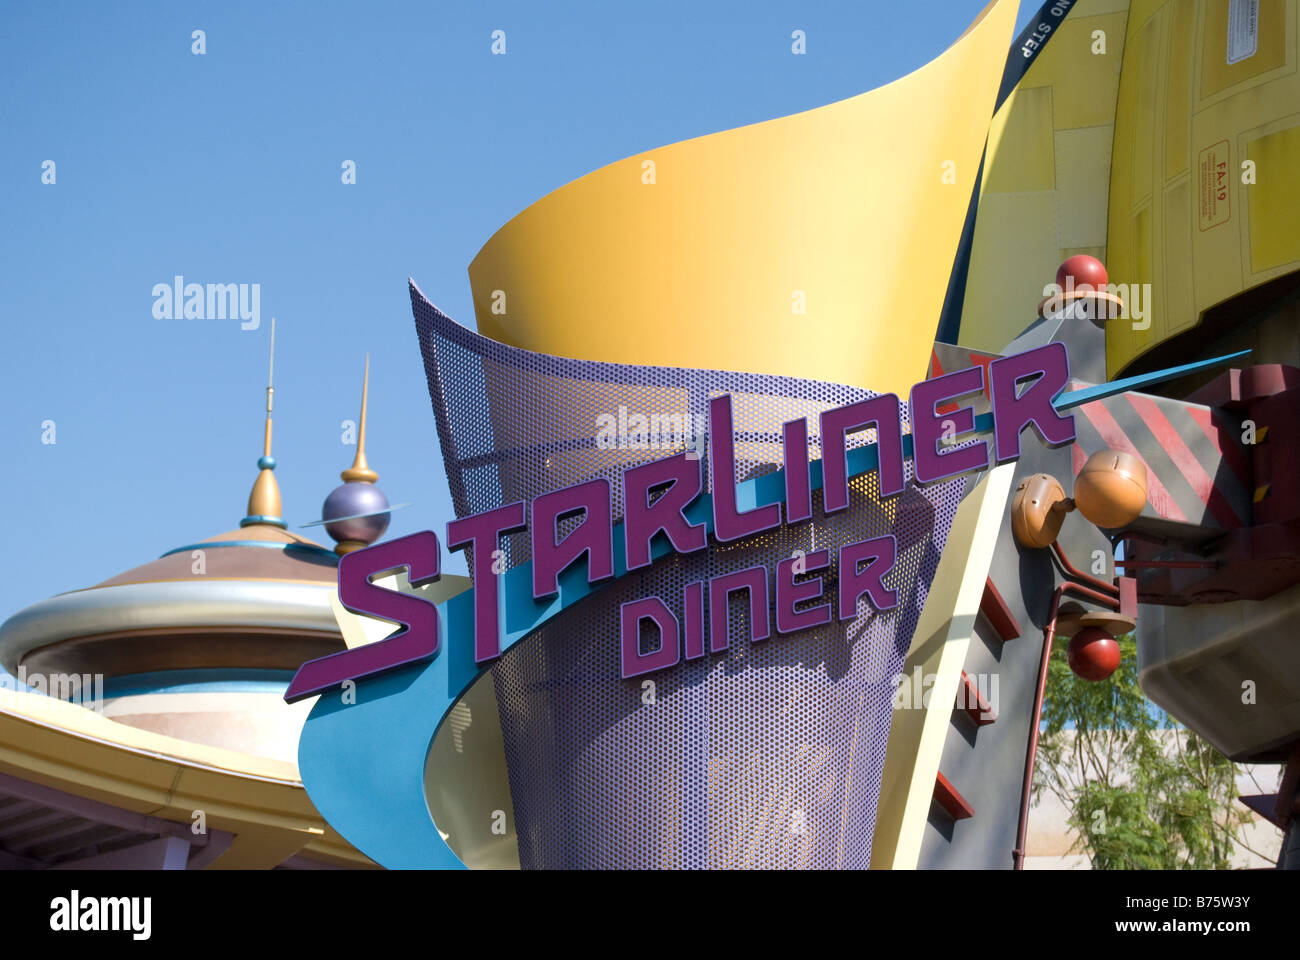 Starliner Diner segno, Tomorrowland, Hong Kong Disneyland Resort, l'Isola di Lantau, Hong Kong, Repubblica Popolare di Cina Foto Stock